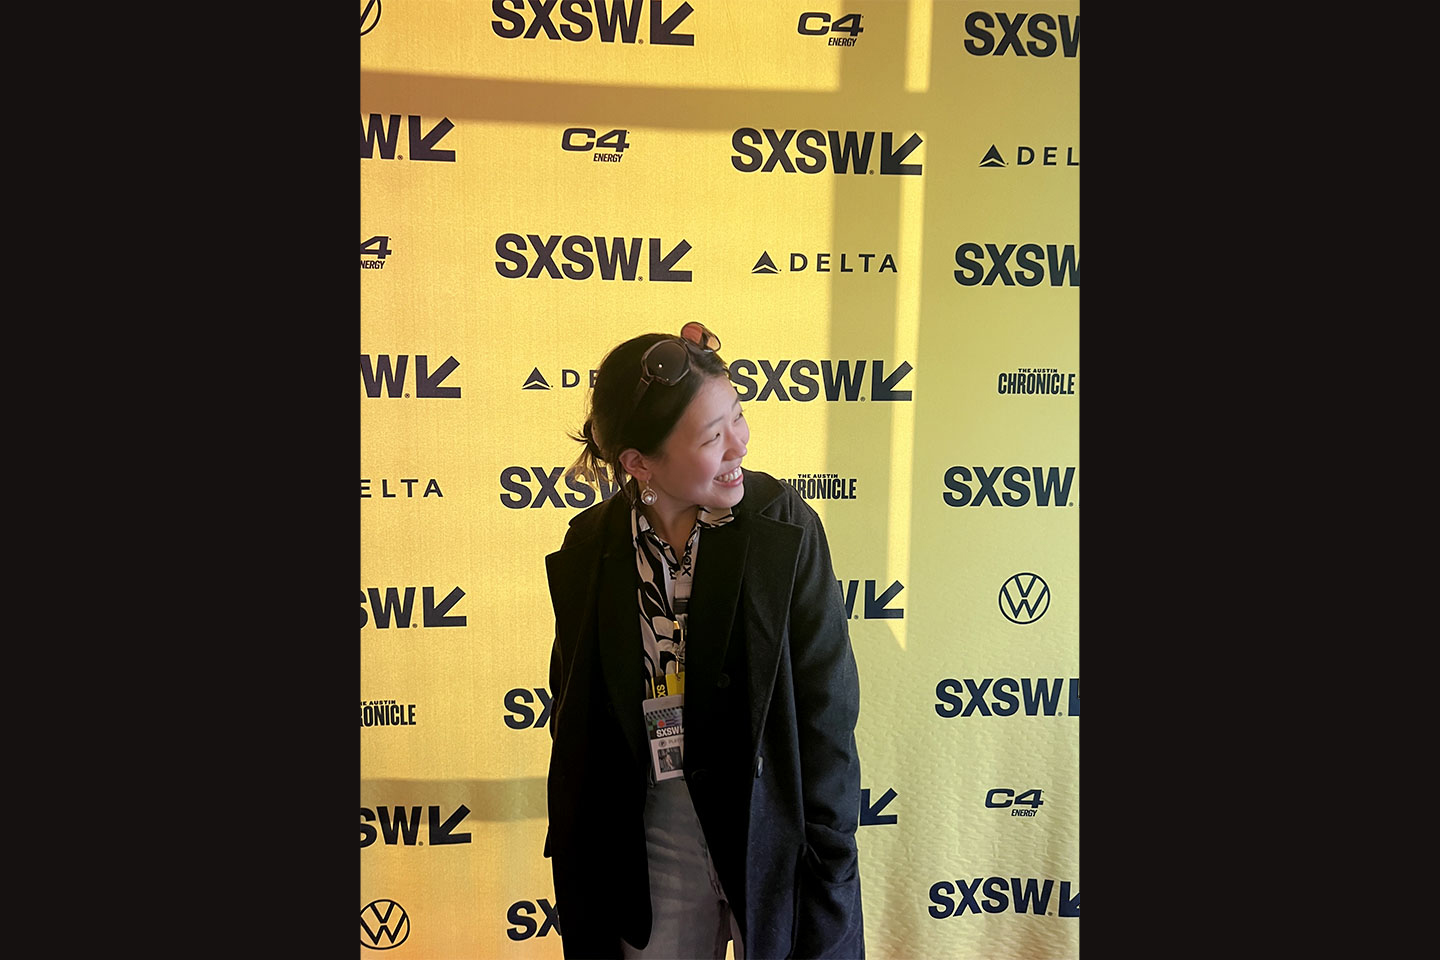 Diane Catsburrow Linnet in front of a SXSW backdrop.